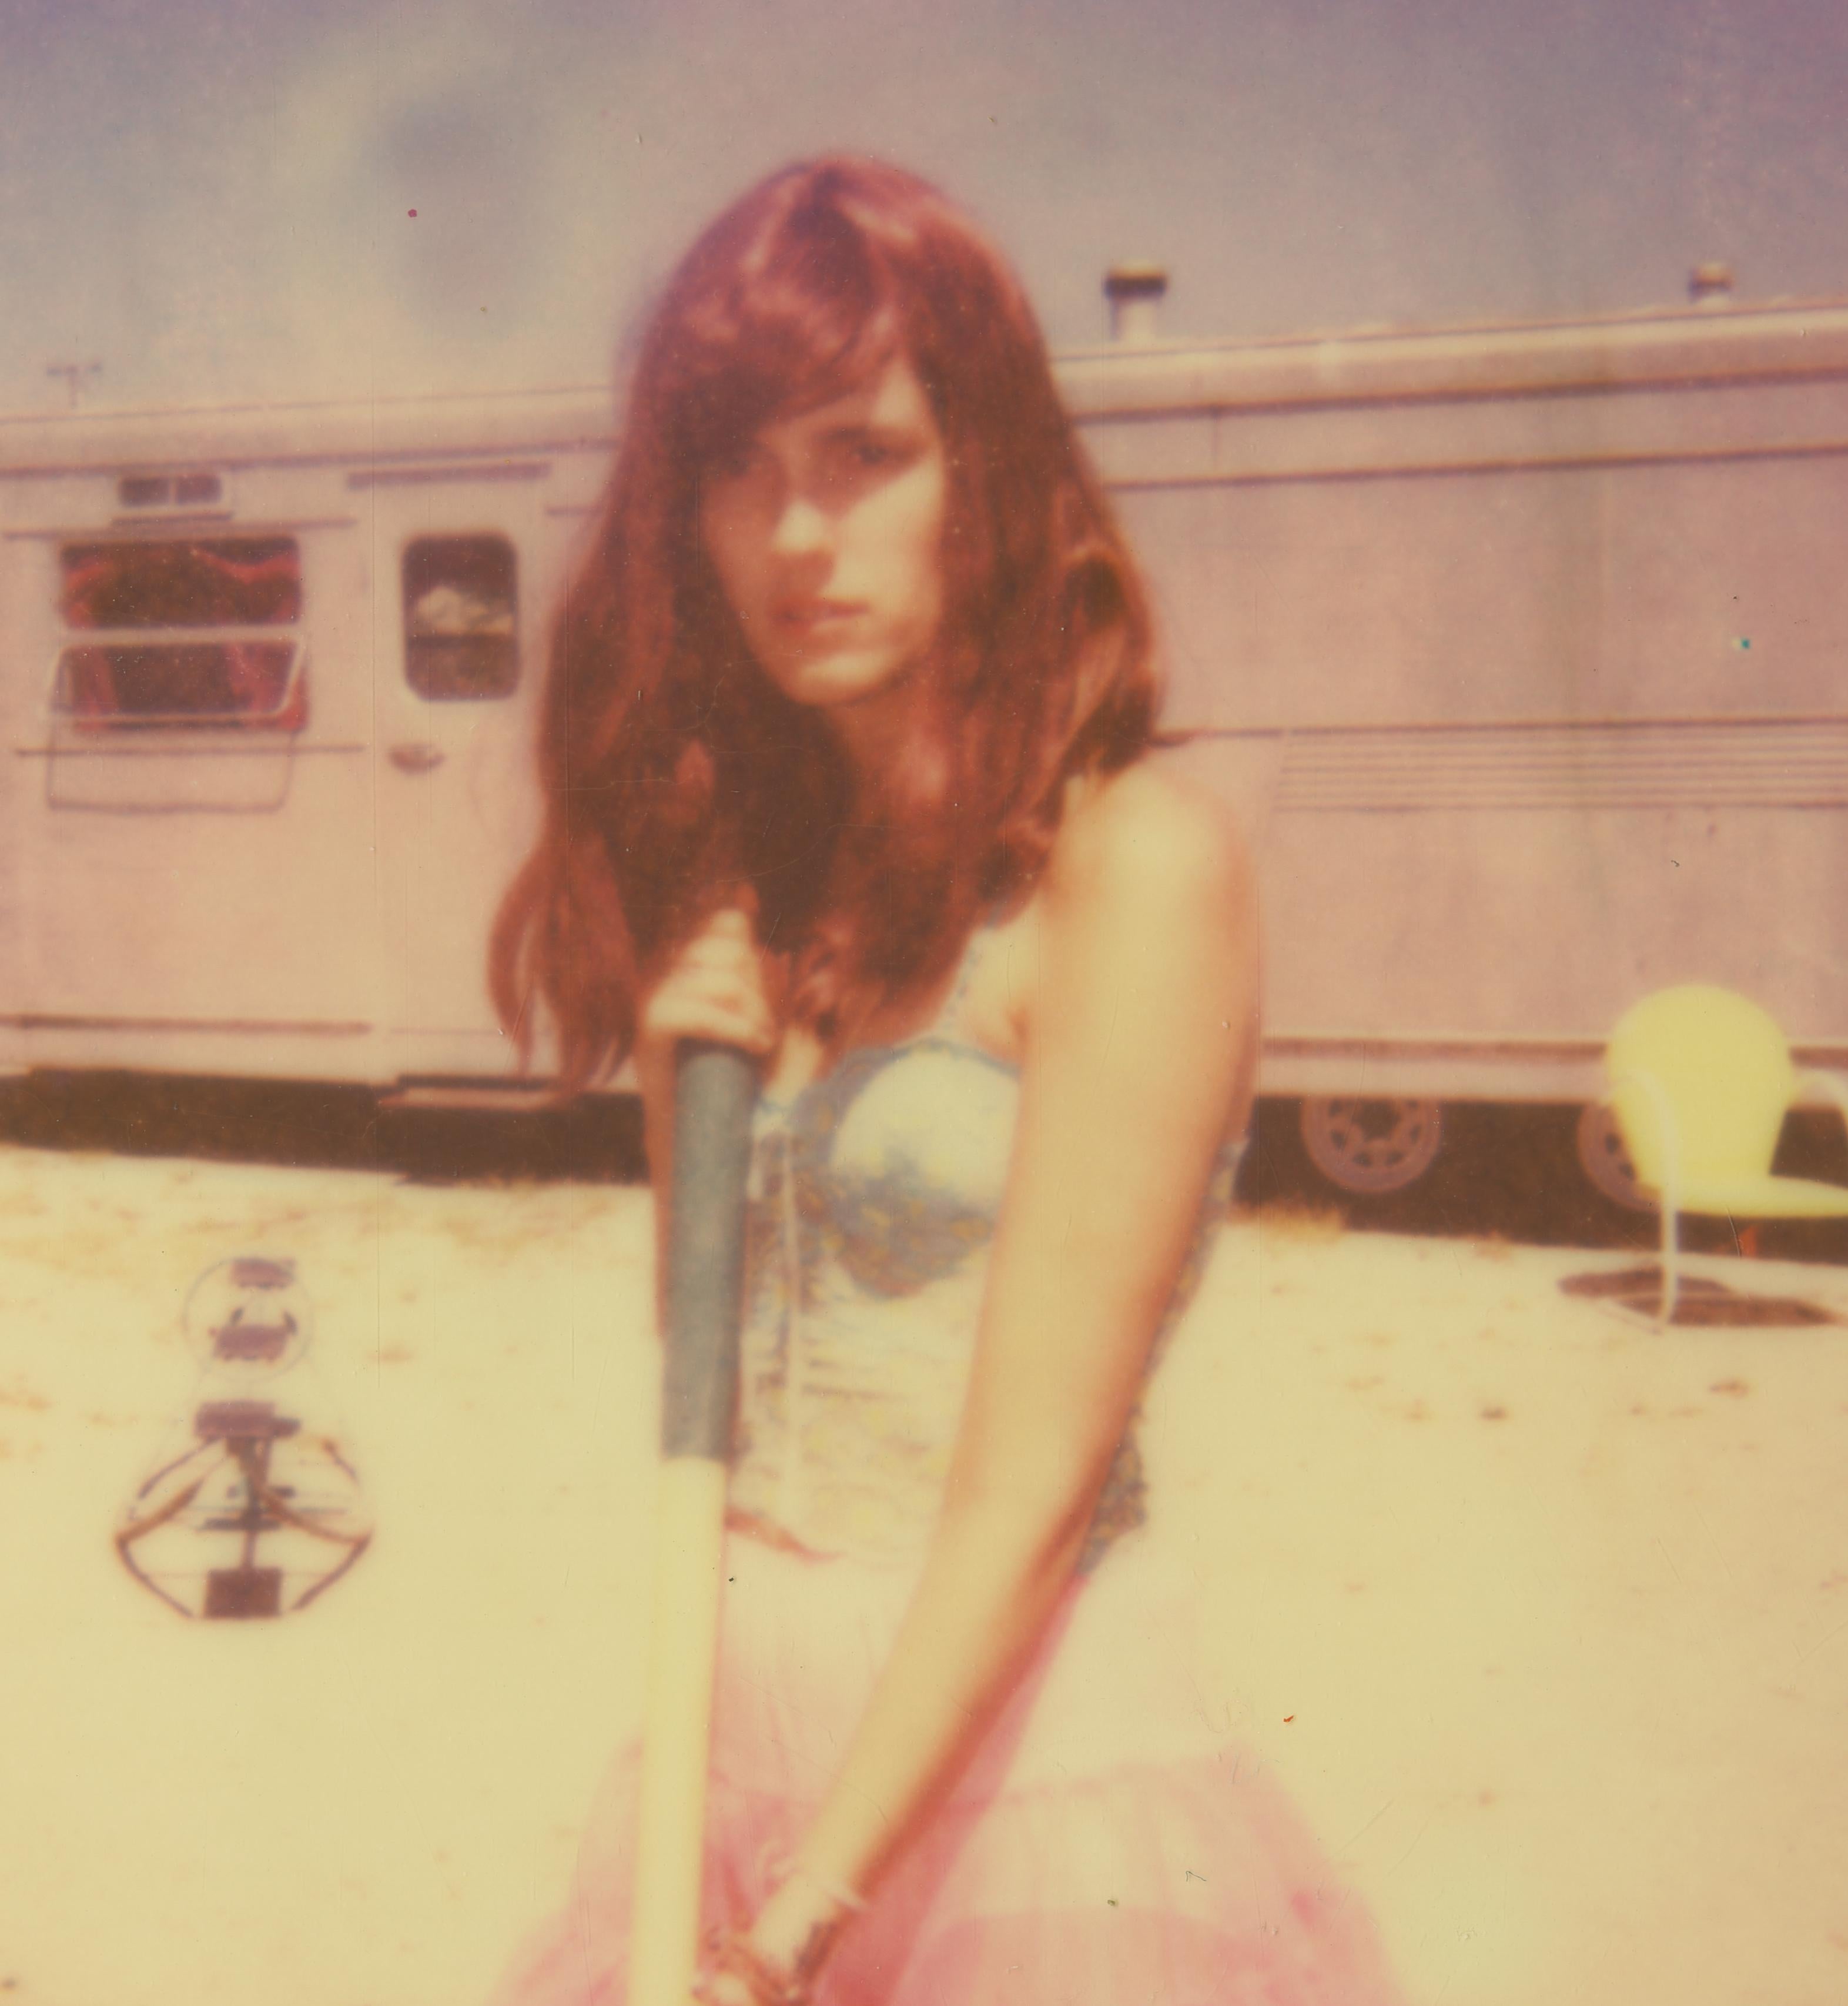 Ein einsamer und verlassener Ort (Das Mädchen hinter dem weißen Picket-Fence) – Polaroid – Photograph von Stefanie Schneider